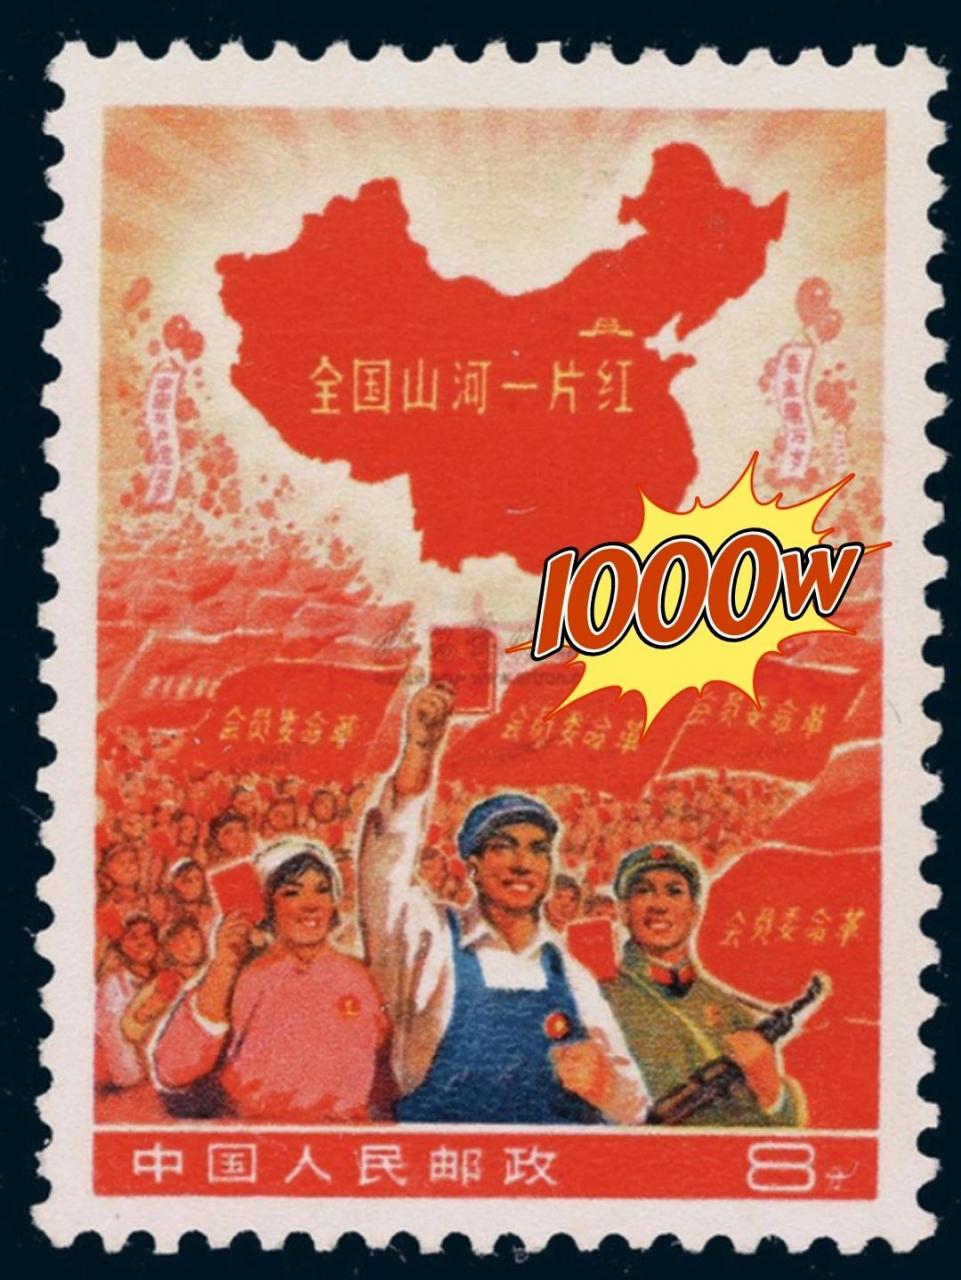 99中国最贵的2个邮票,最高成交价5000万 8215to1:大龙邮票 95